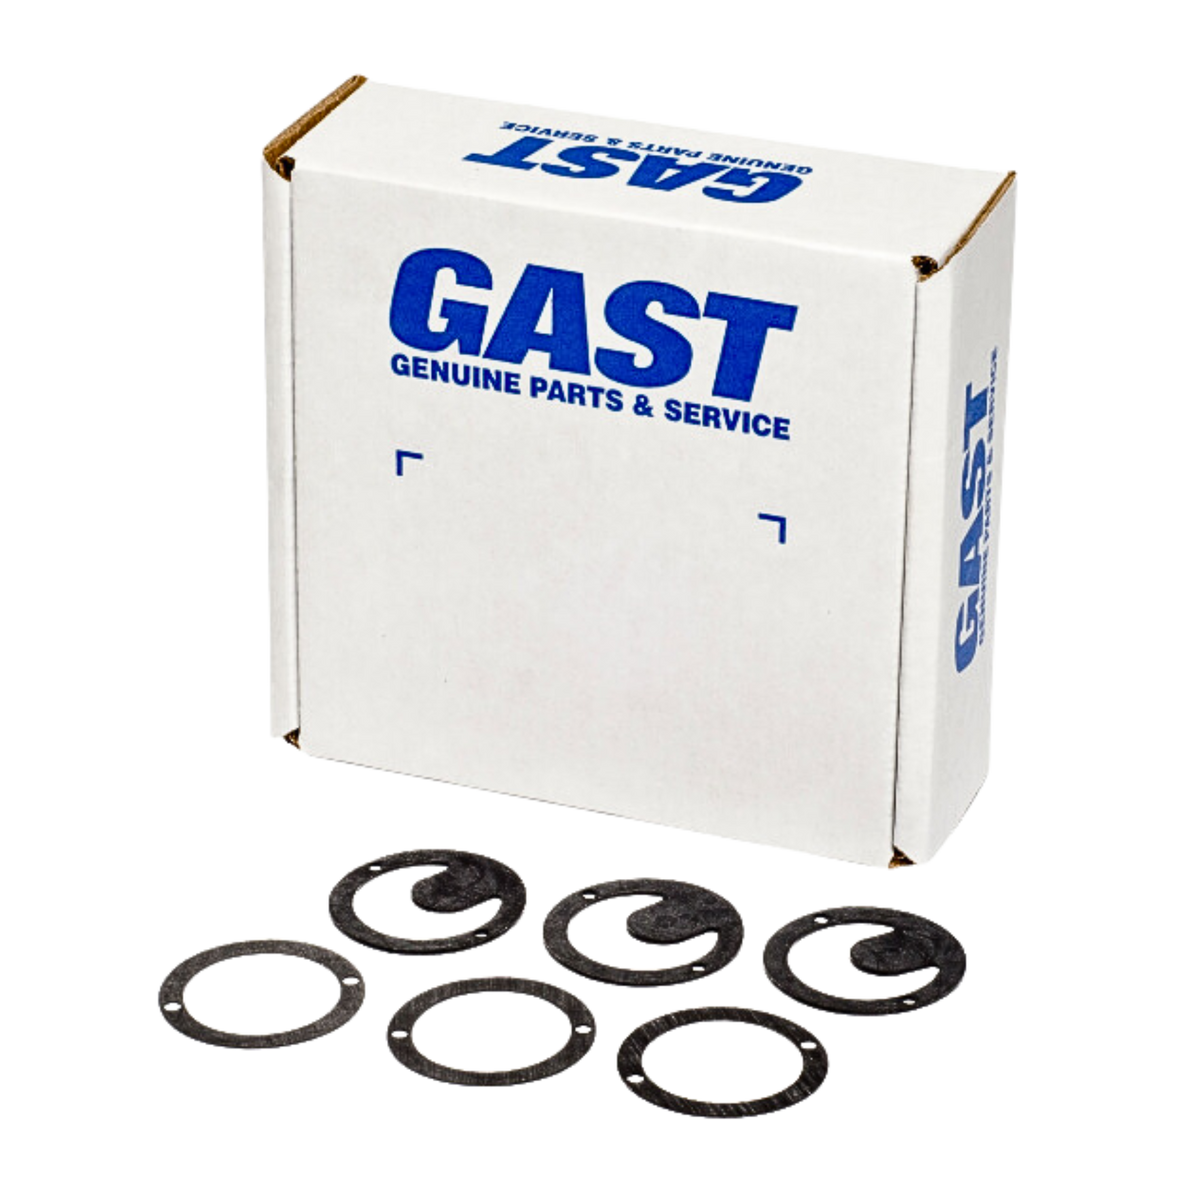 Gast | Vacuum Generator Service Kit | K549 used on gast product line